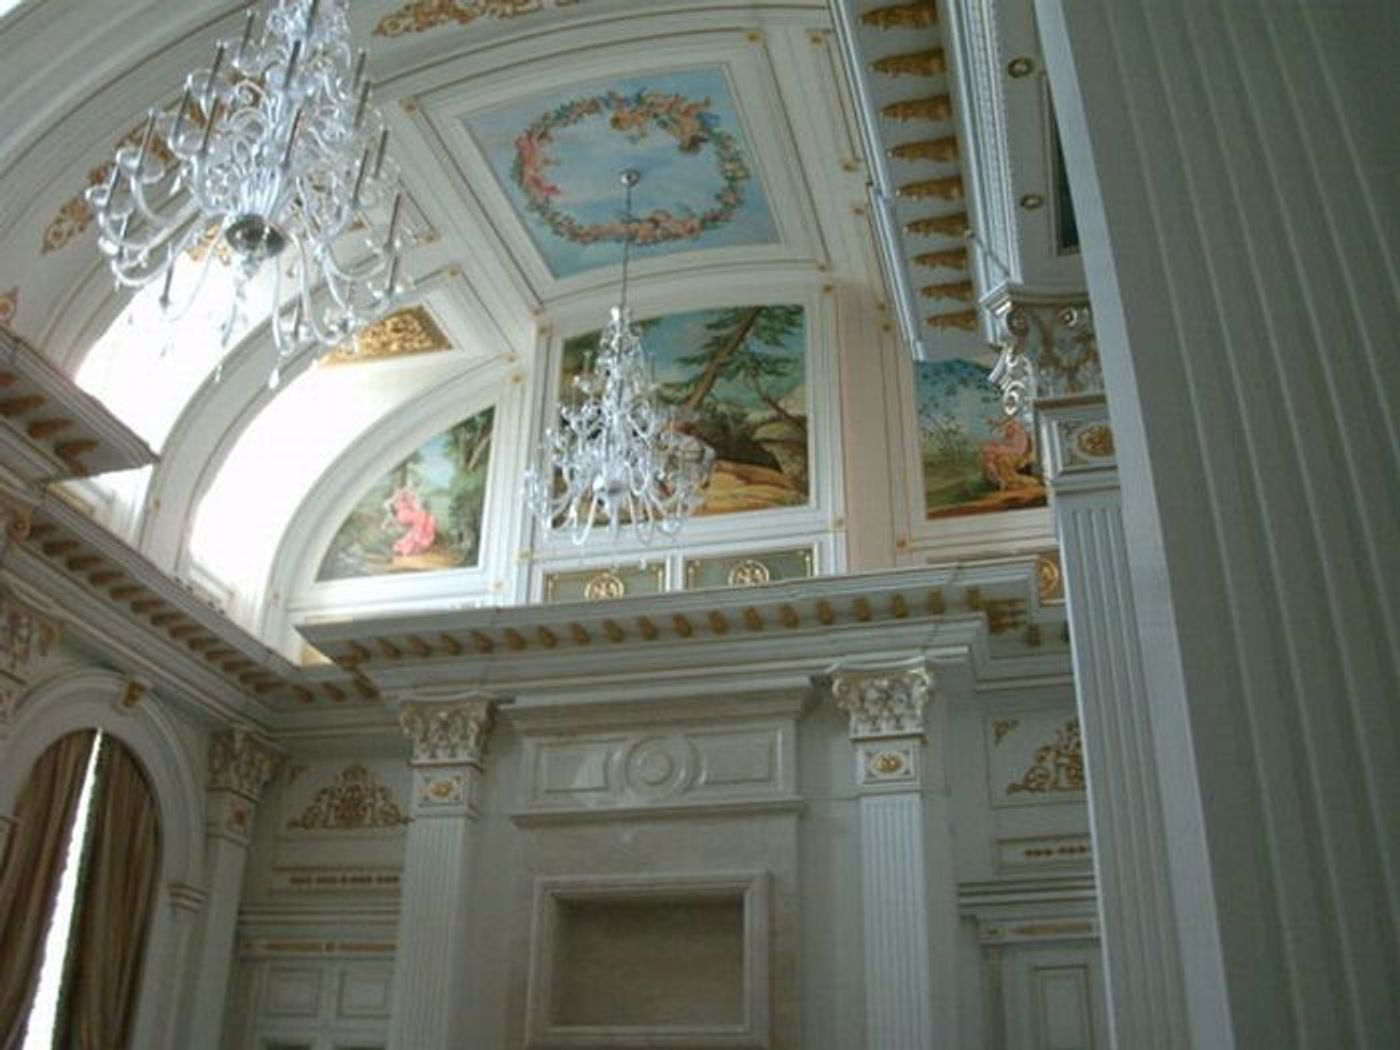 Интерьер дворца в Геленджике. Фотография опубликована в 2011 году на сайте trinixy.ru